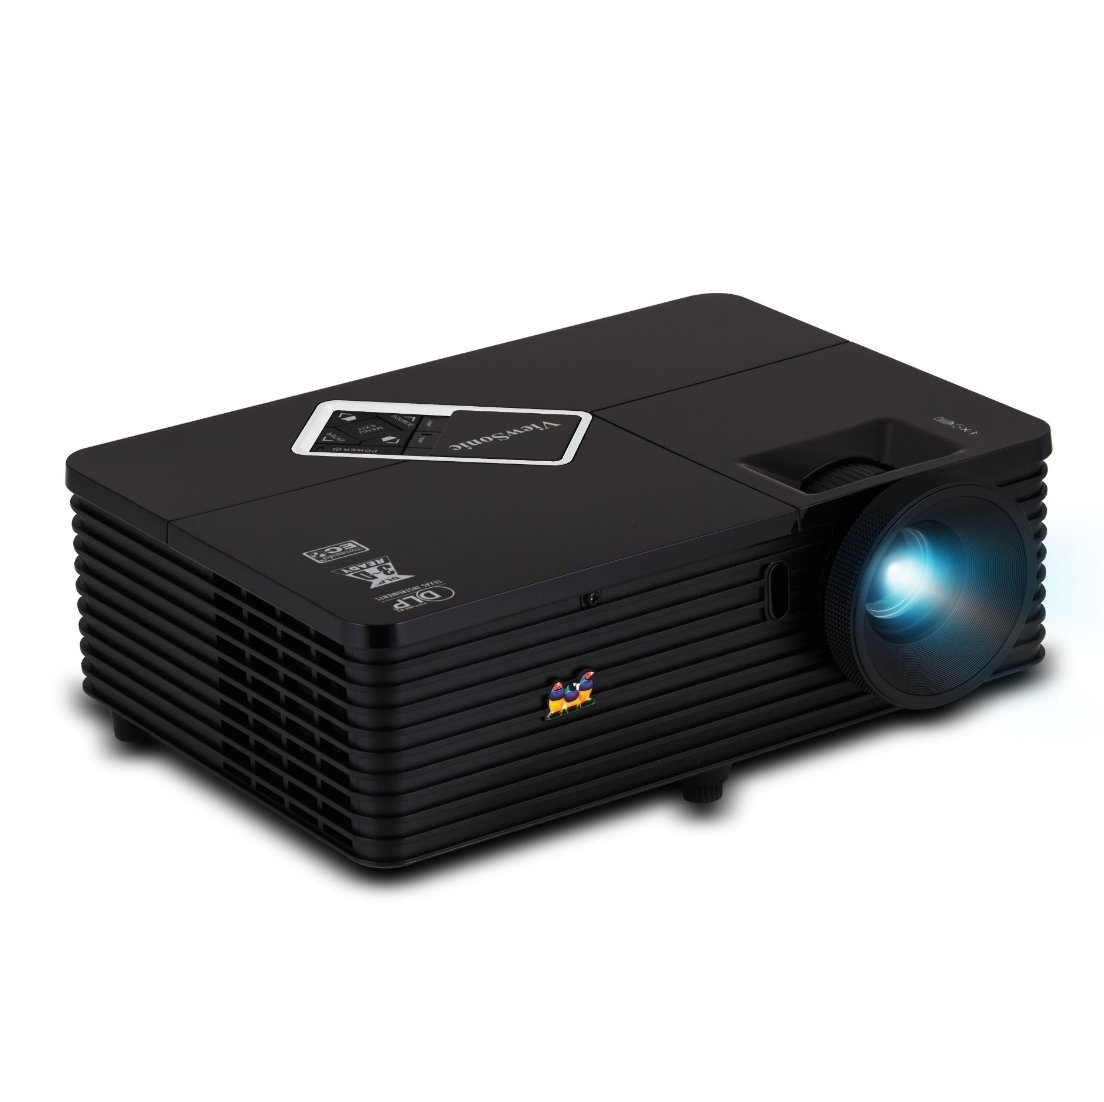 Máy chiếu ViewSonic PJD5232 (PJD-5232) - 2800 lumens